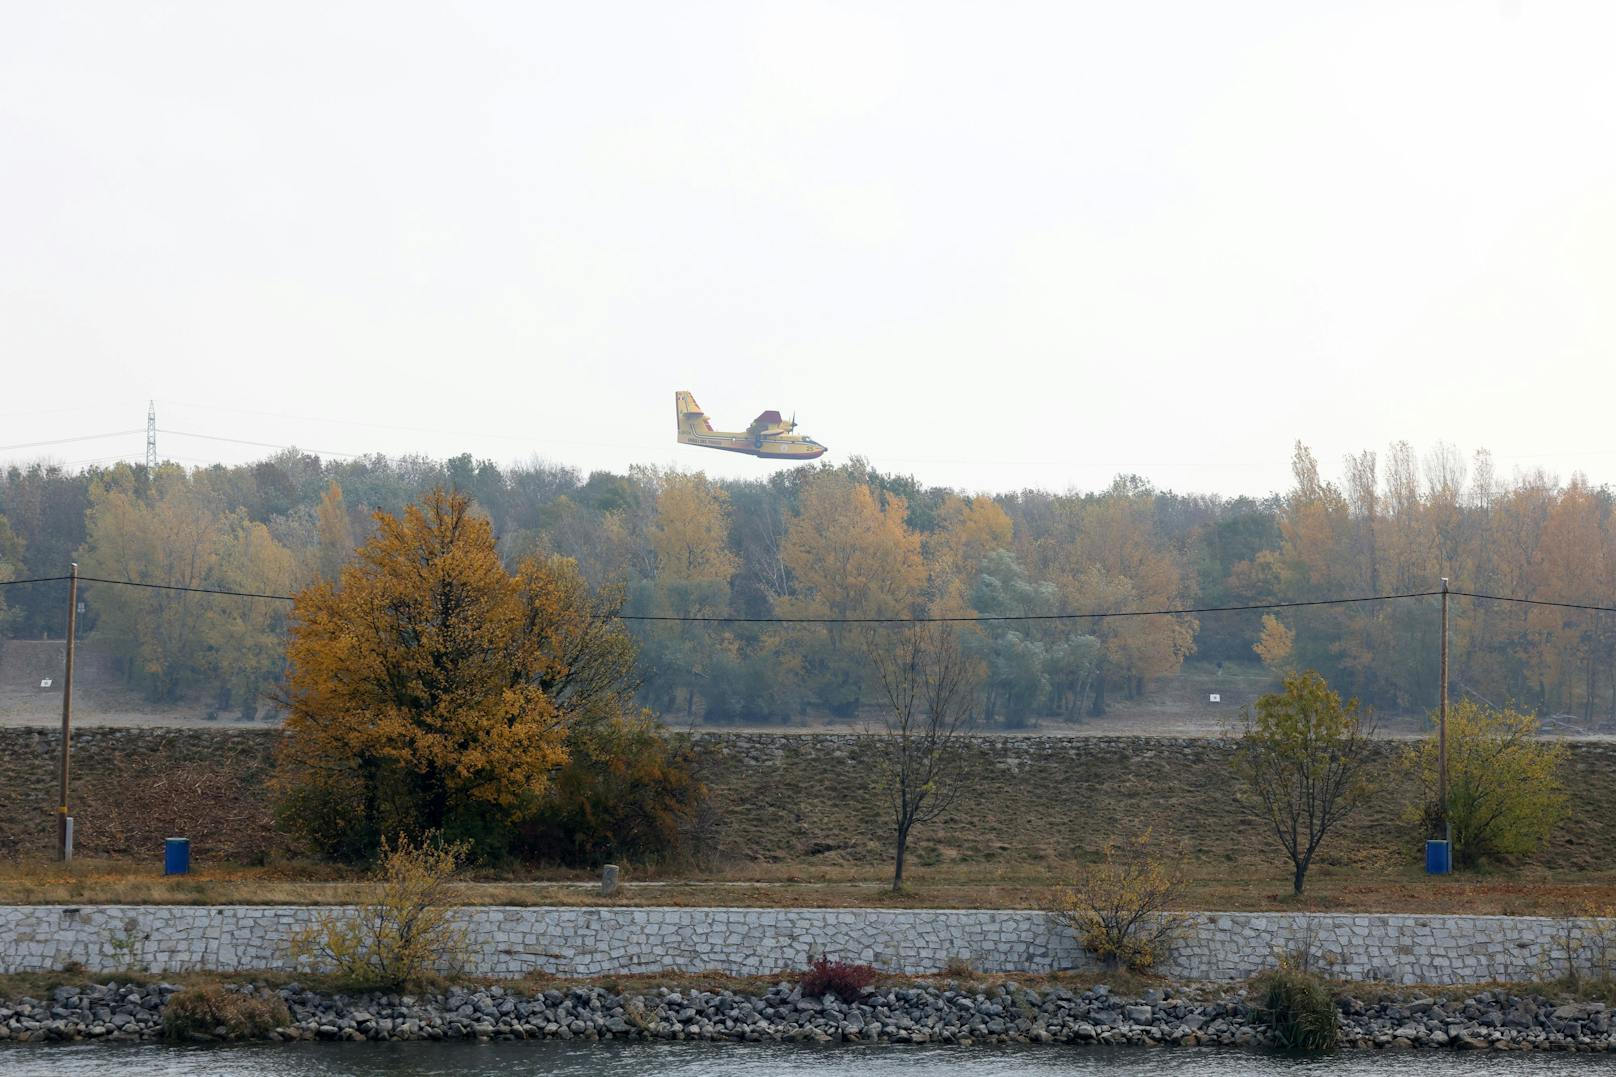 Löschflugzeug aus Italien holt Wasser aus Donau.